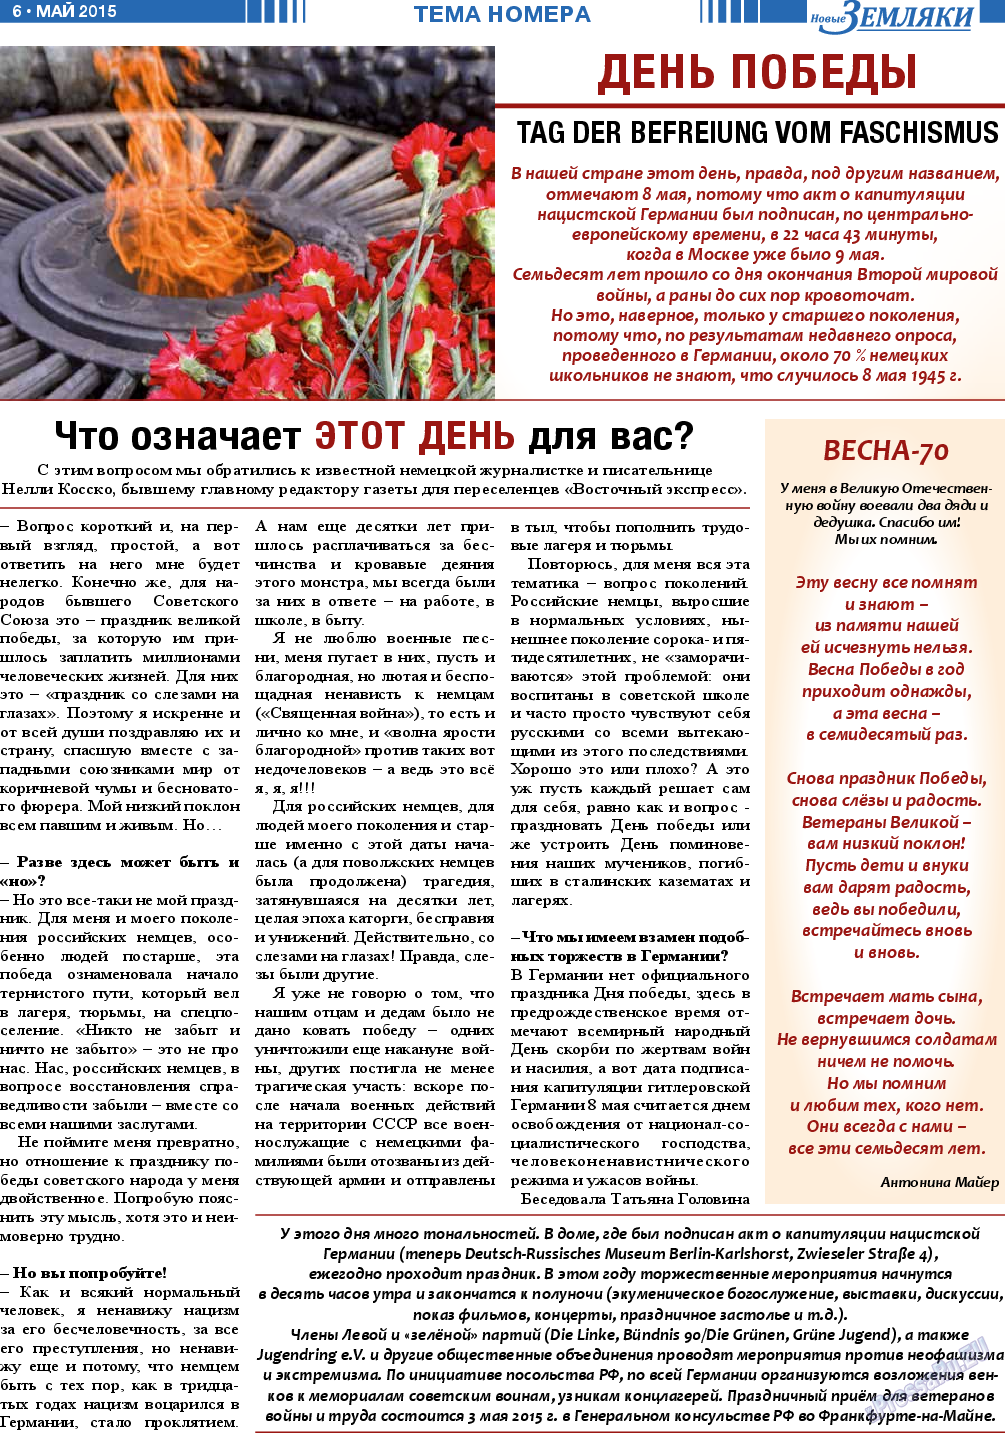 Новые Земляки (газета). 2015 год, номер 5, стр. 6